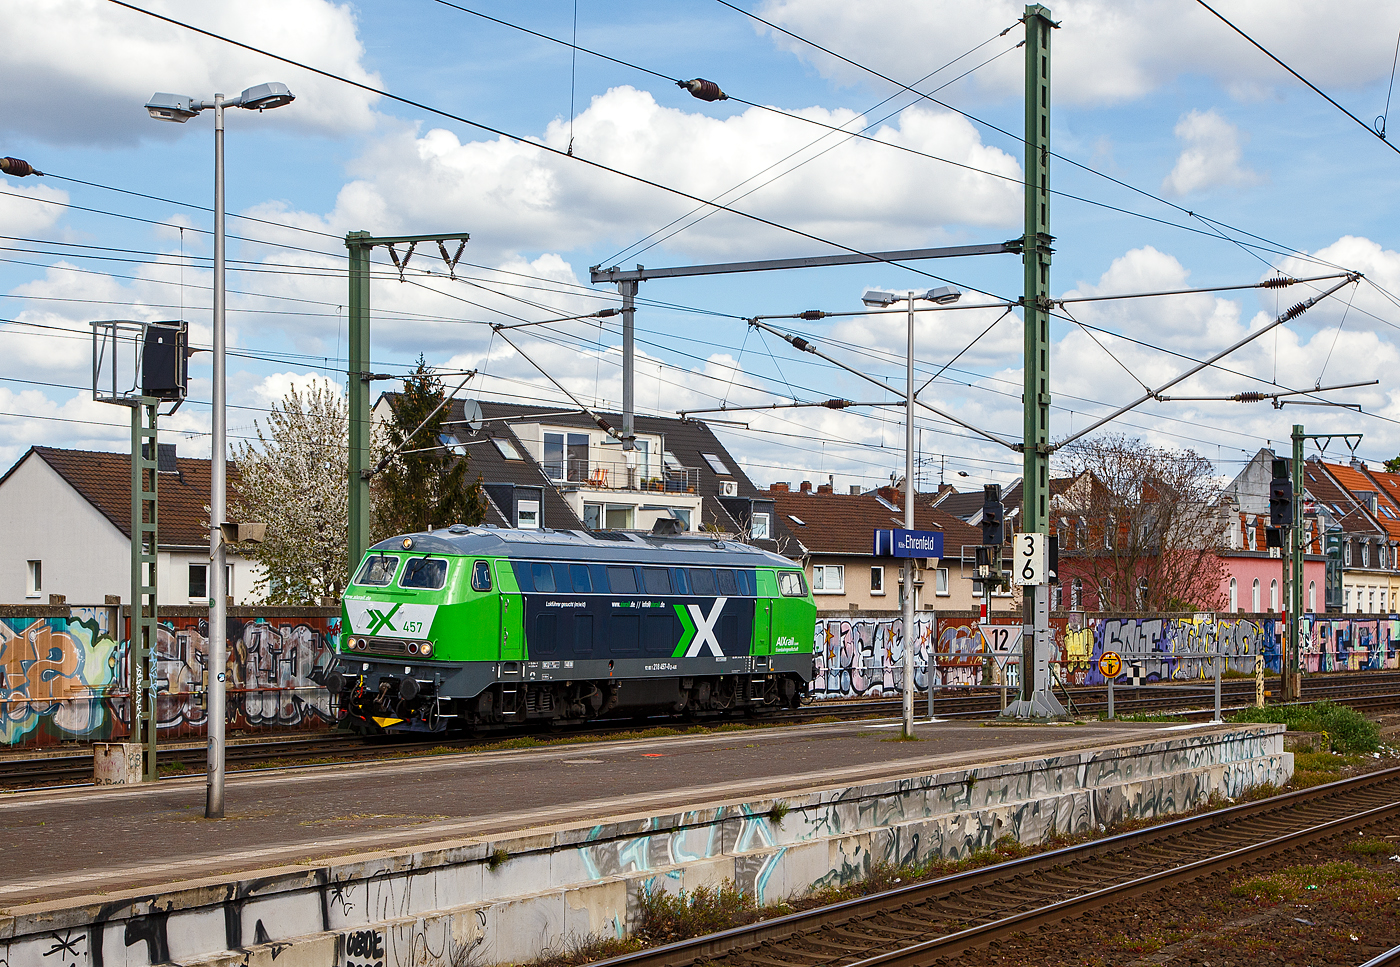 Die 218 457-0 (92 80 1218 457-0 D-AIX) der der AIXrail GmbH (Aachen) fährt am 30.04.2023, als Lz (Lokzug) bzw. auf Tfzf (Triebfahrzeugfahrt), durch den Bahnhof Köln-Ehrenfeld in Richtung Aachen.

Die V 164 wurde 1978 bei Henschel in Kassel unter der Fabriknummer 32051 gebaut und als 218 457-0 an die DB geliefert. Bis Dezember 2018 fuhr sie als 92 80 1218 457-0 D-DB für die DB Regio Bayern und wurde 2019 an die AIXrail GmbH verkauft.